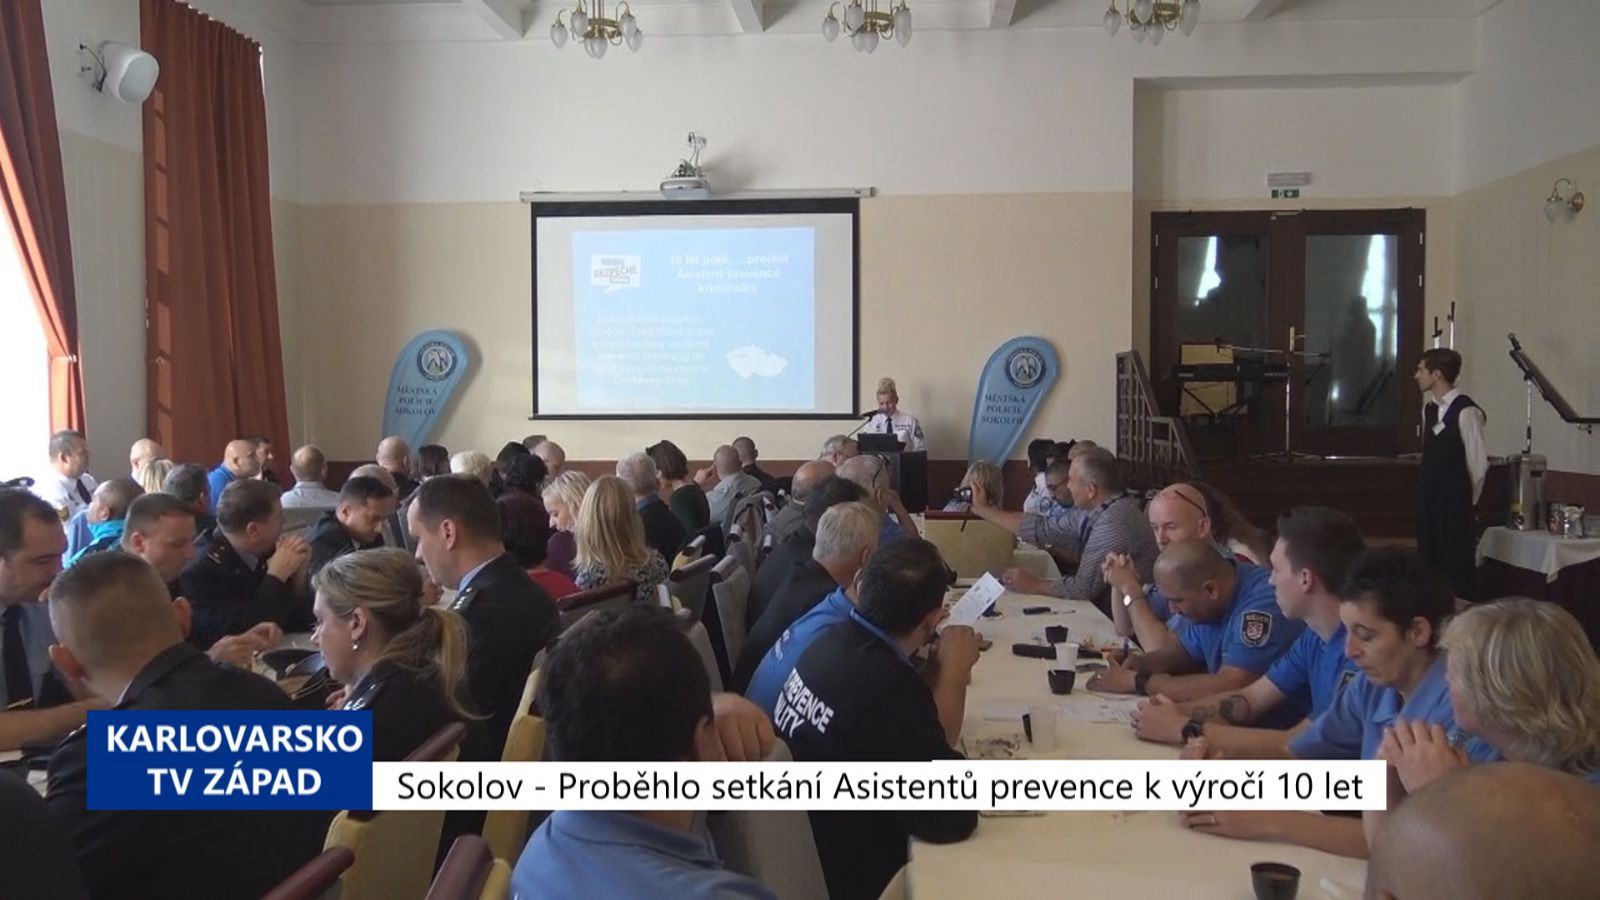 Sokolov: Proběhlo setkání Asistentů prevence k výročí 10 let (TV Západ)